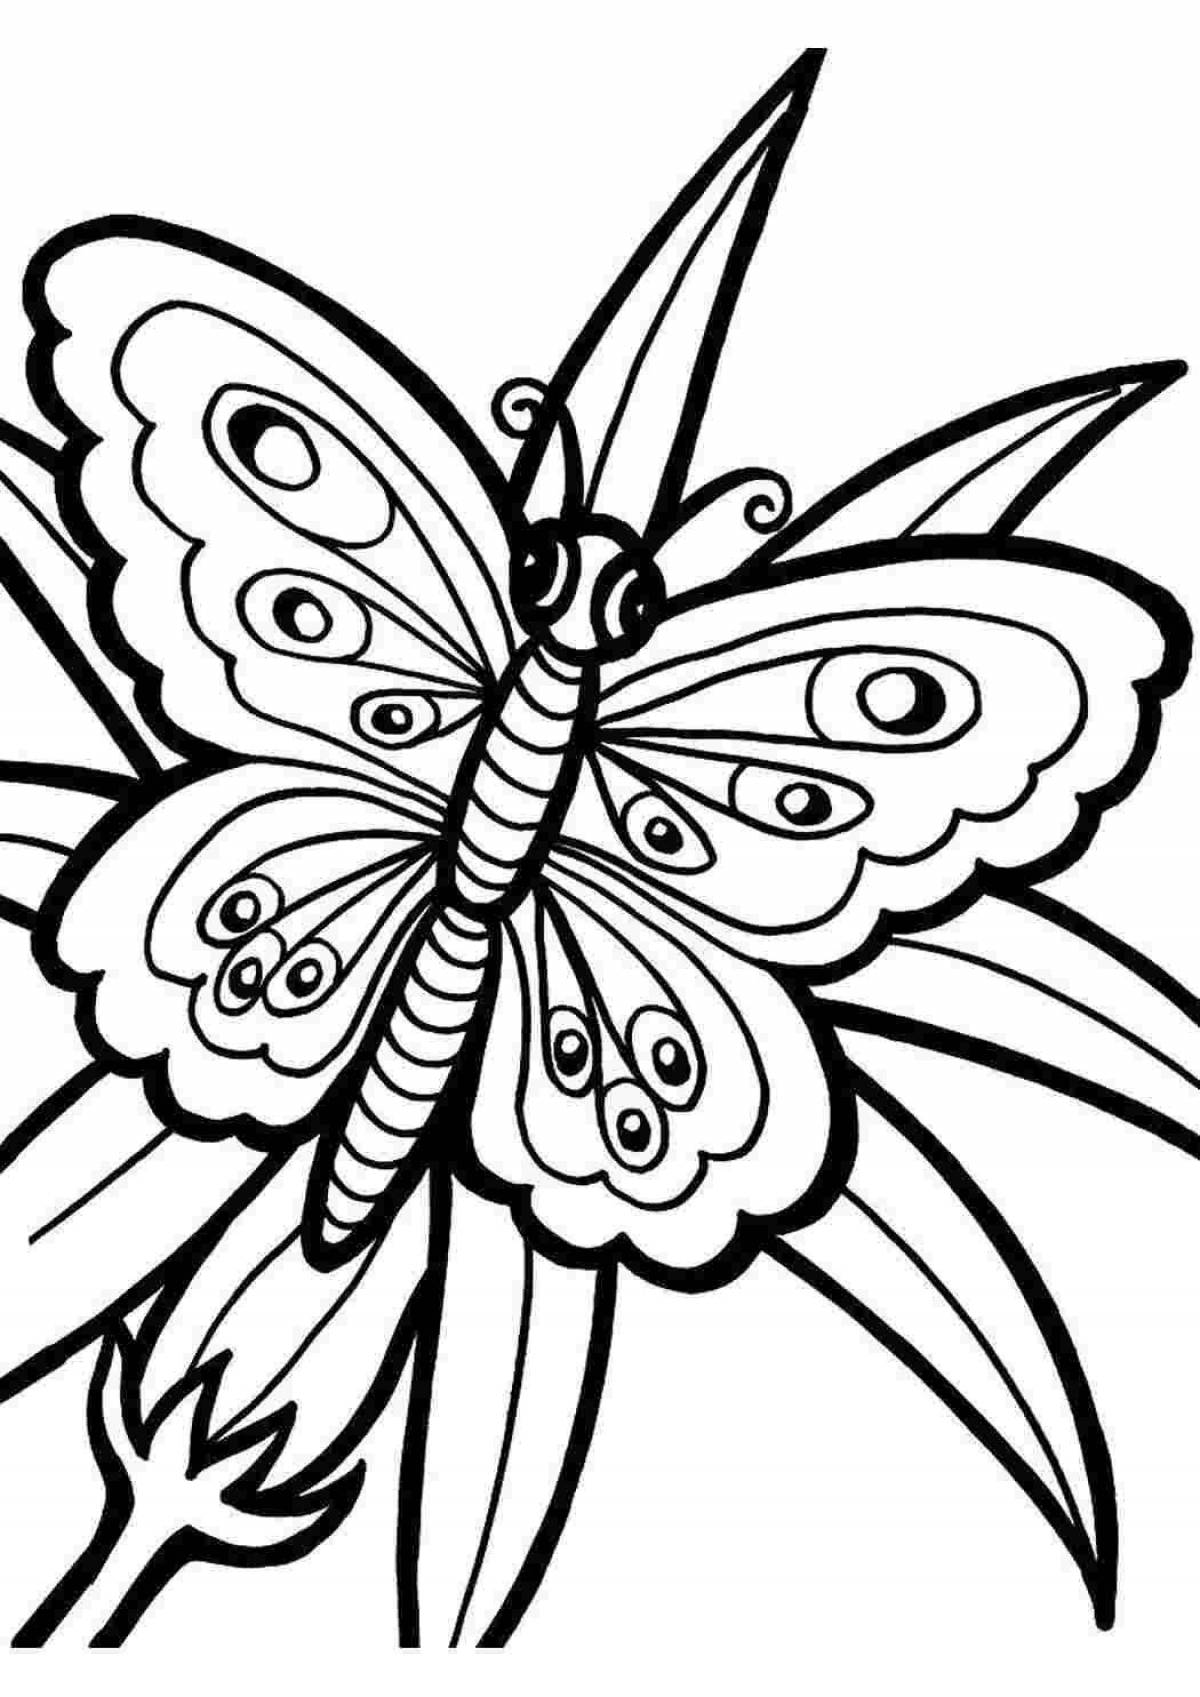 Картинки раскраски. Раскраска "бабочки". Бабочка раскраска для детей. Рисунок бабочки для раскрашивания. Детские раскраски бабочки.